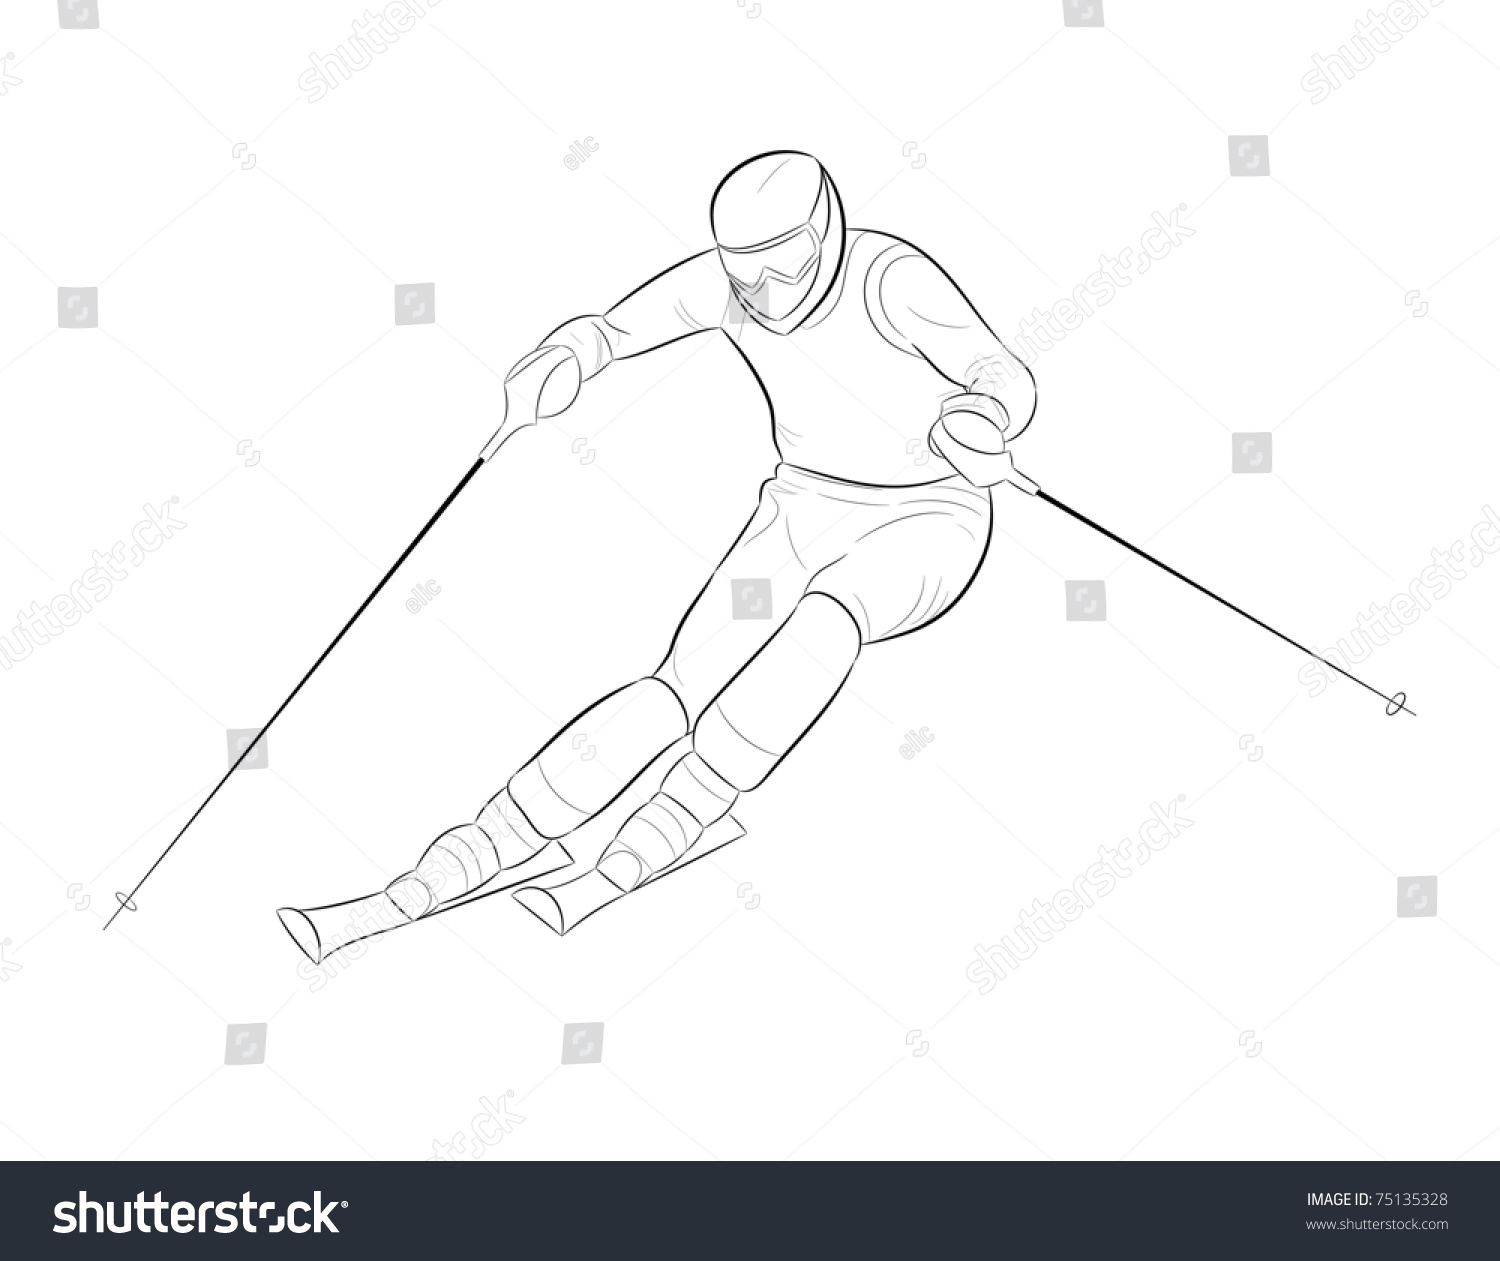 Спортсмен в движении рисунок. Нарисовать лыжника. Нарисовать лыжника в движении. Лыжник карандашом. Рисование лыжник.